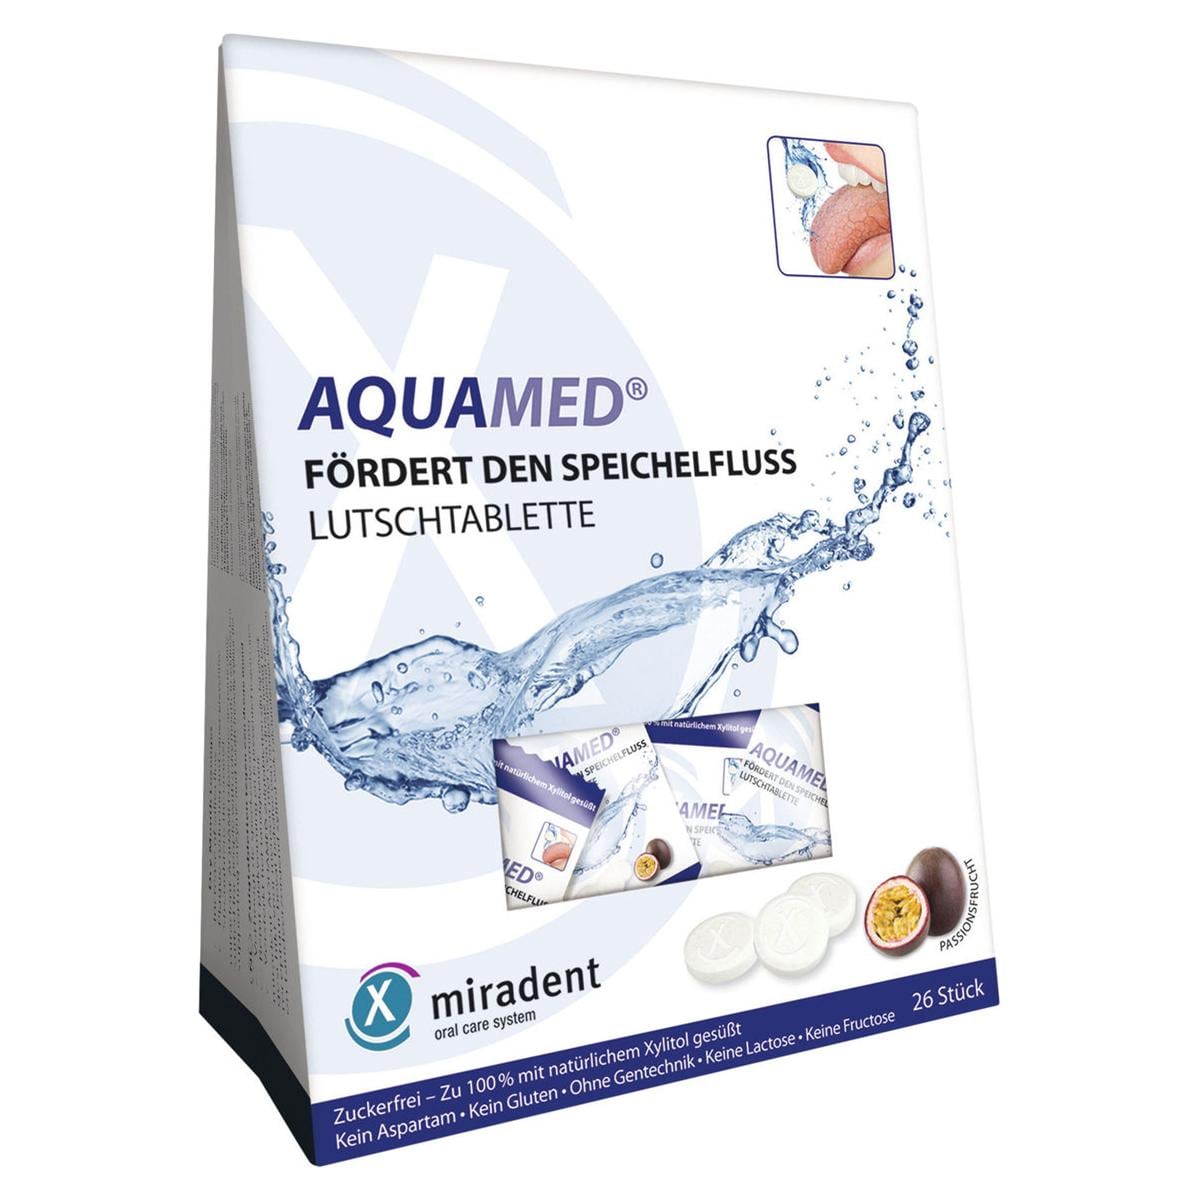 Aquamed - Verpakking, 26 stuks